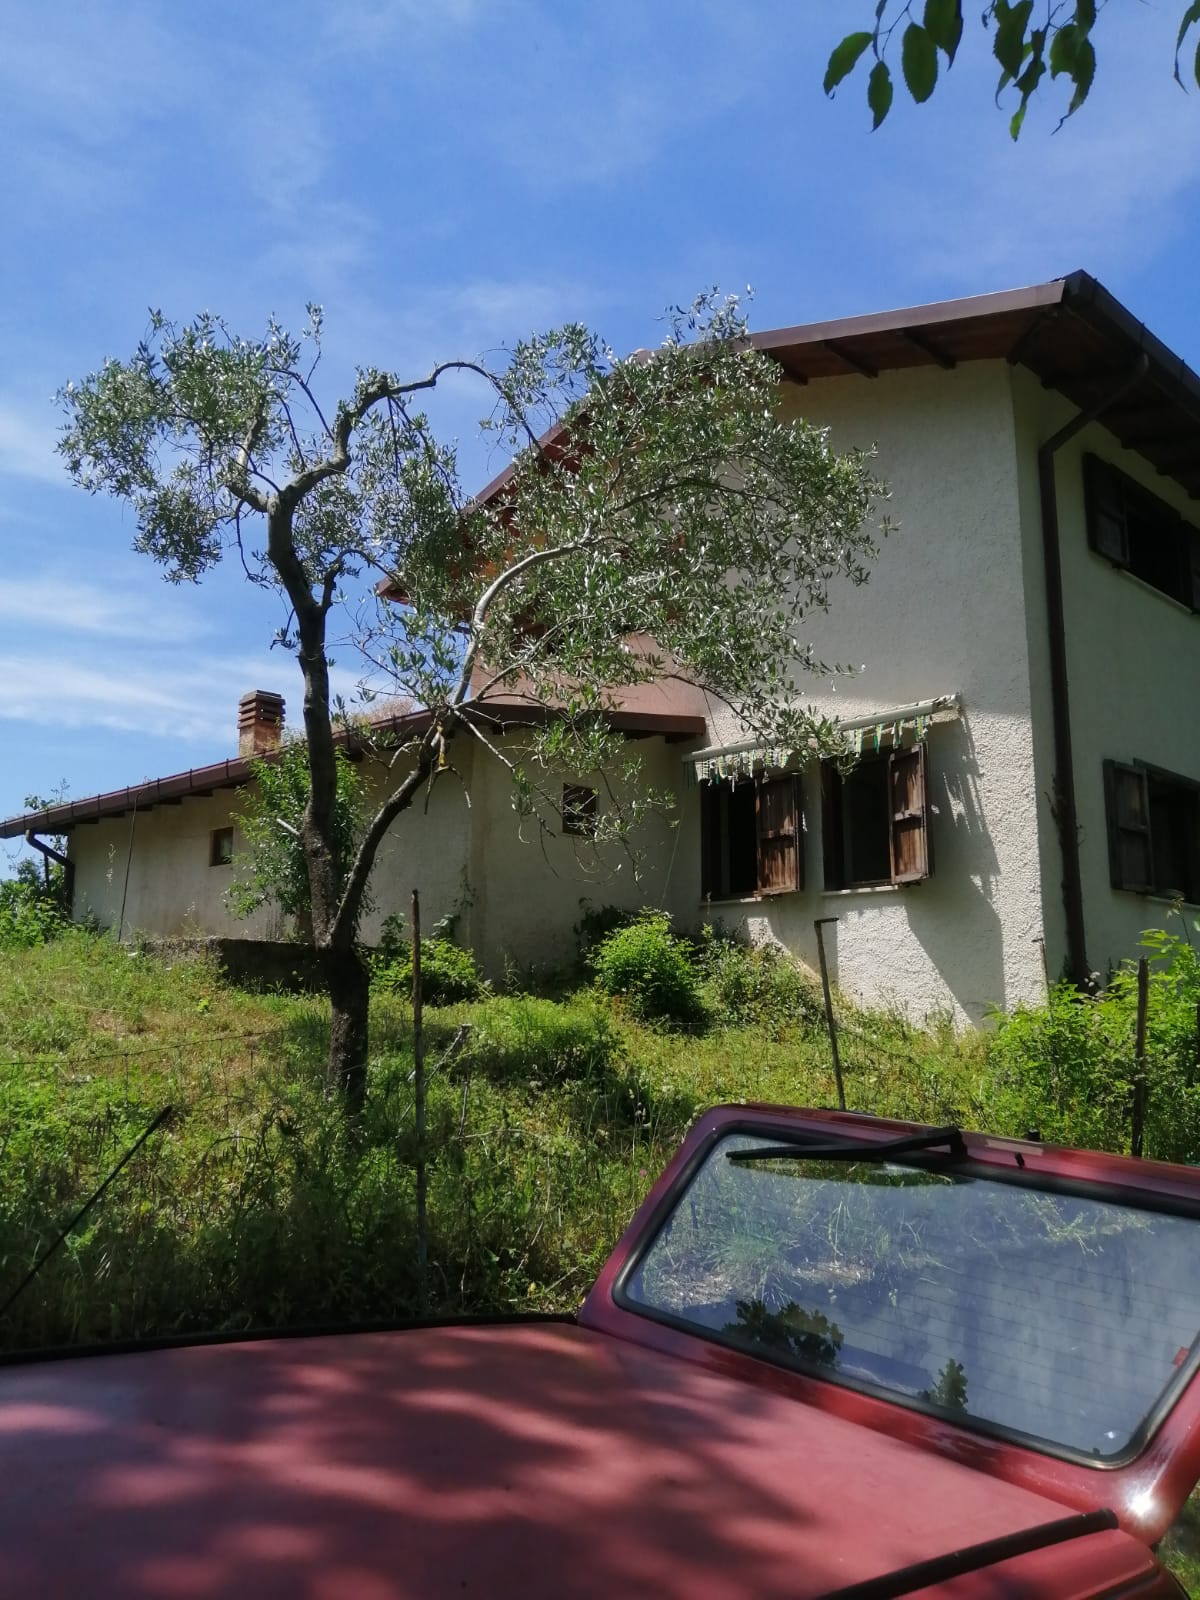 RIETI- CITTADUCALE: Casale con terreno agricolo (Rif. 2465)